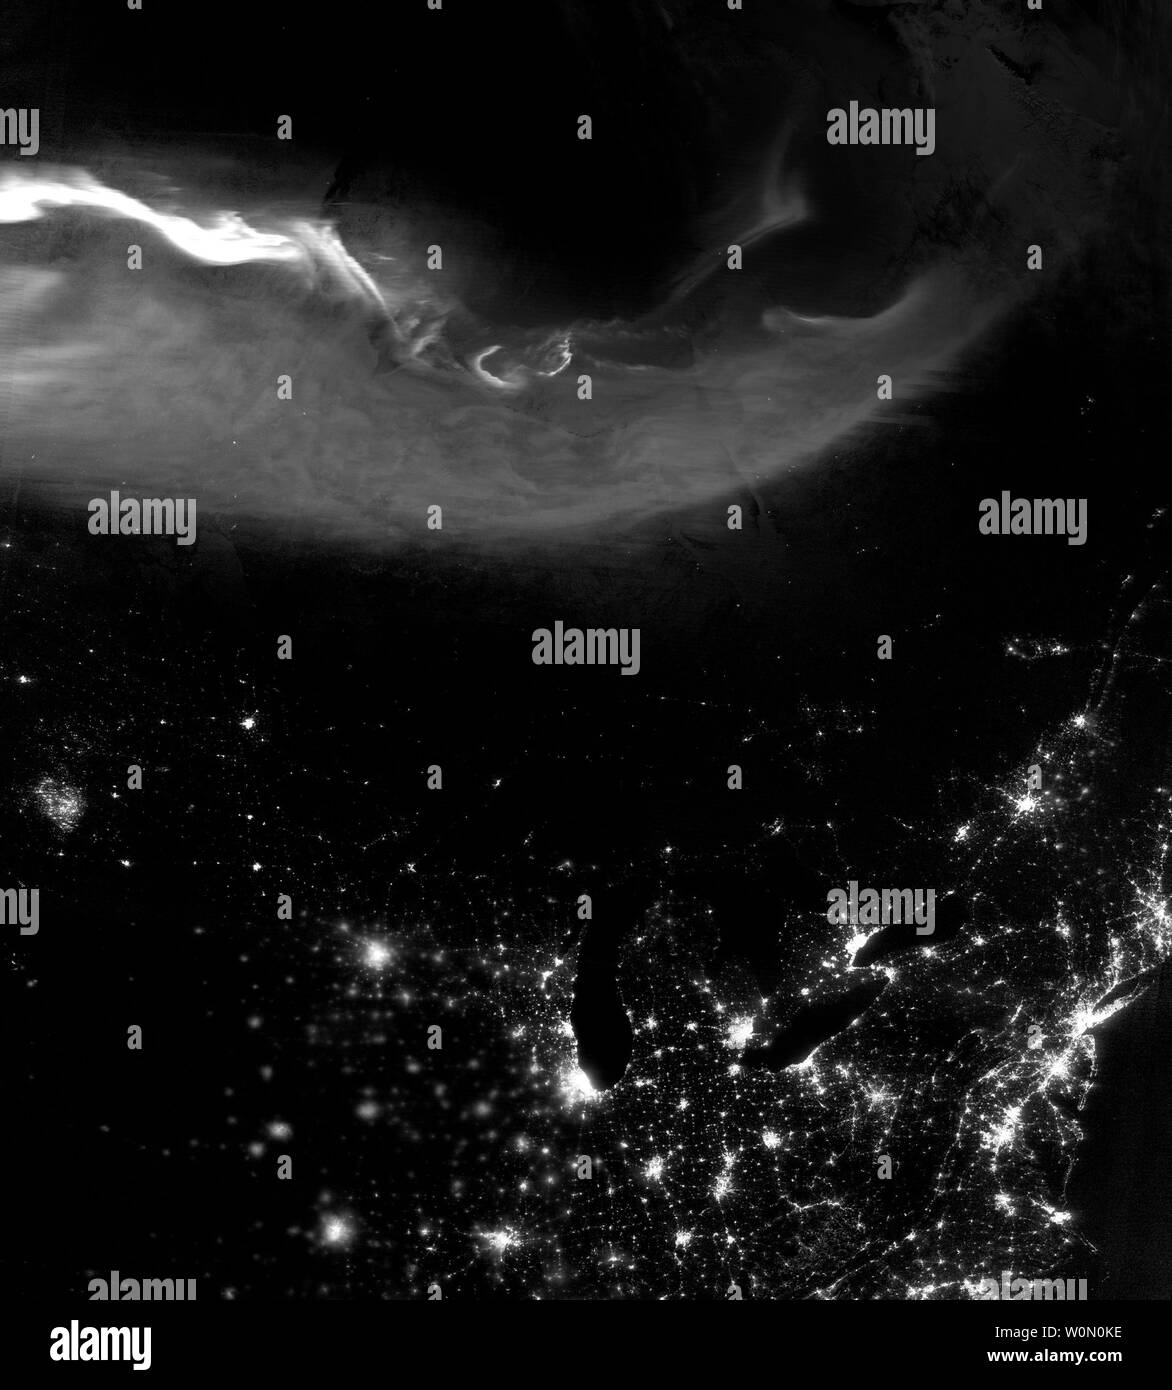 Um 3:46 Uhr Eastern Time am 21. April 2018, den sichtbaren Infrarot Imaging Radiometer Suite (VIIRS) auf der Suomi NPP-Satelliten erfasst dieses Bild der Aurora Borealis über Nordamerika. Der nächtliche Bild wurde möglich gemacht durch VIIRS 'Day-Nacht band", die das Licht in einem Bereich von Wellenlängen von Grün in der Nähe von Infrarot und nutzt Filtertechniken erkennt Signale wie Airglow, Polarlichter, Waldbrände, die Lichter der Stadt zu beobachten und reflektierte Mondlicht. Unsere Sonne bietet das Licht und die Wärme, die unsere Anlagen wird erregt, und unsere Solarmodule, und unser Wetter, unter anderem. Aber sein Einfluss stretch Stockfoto